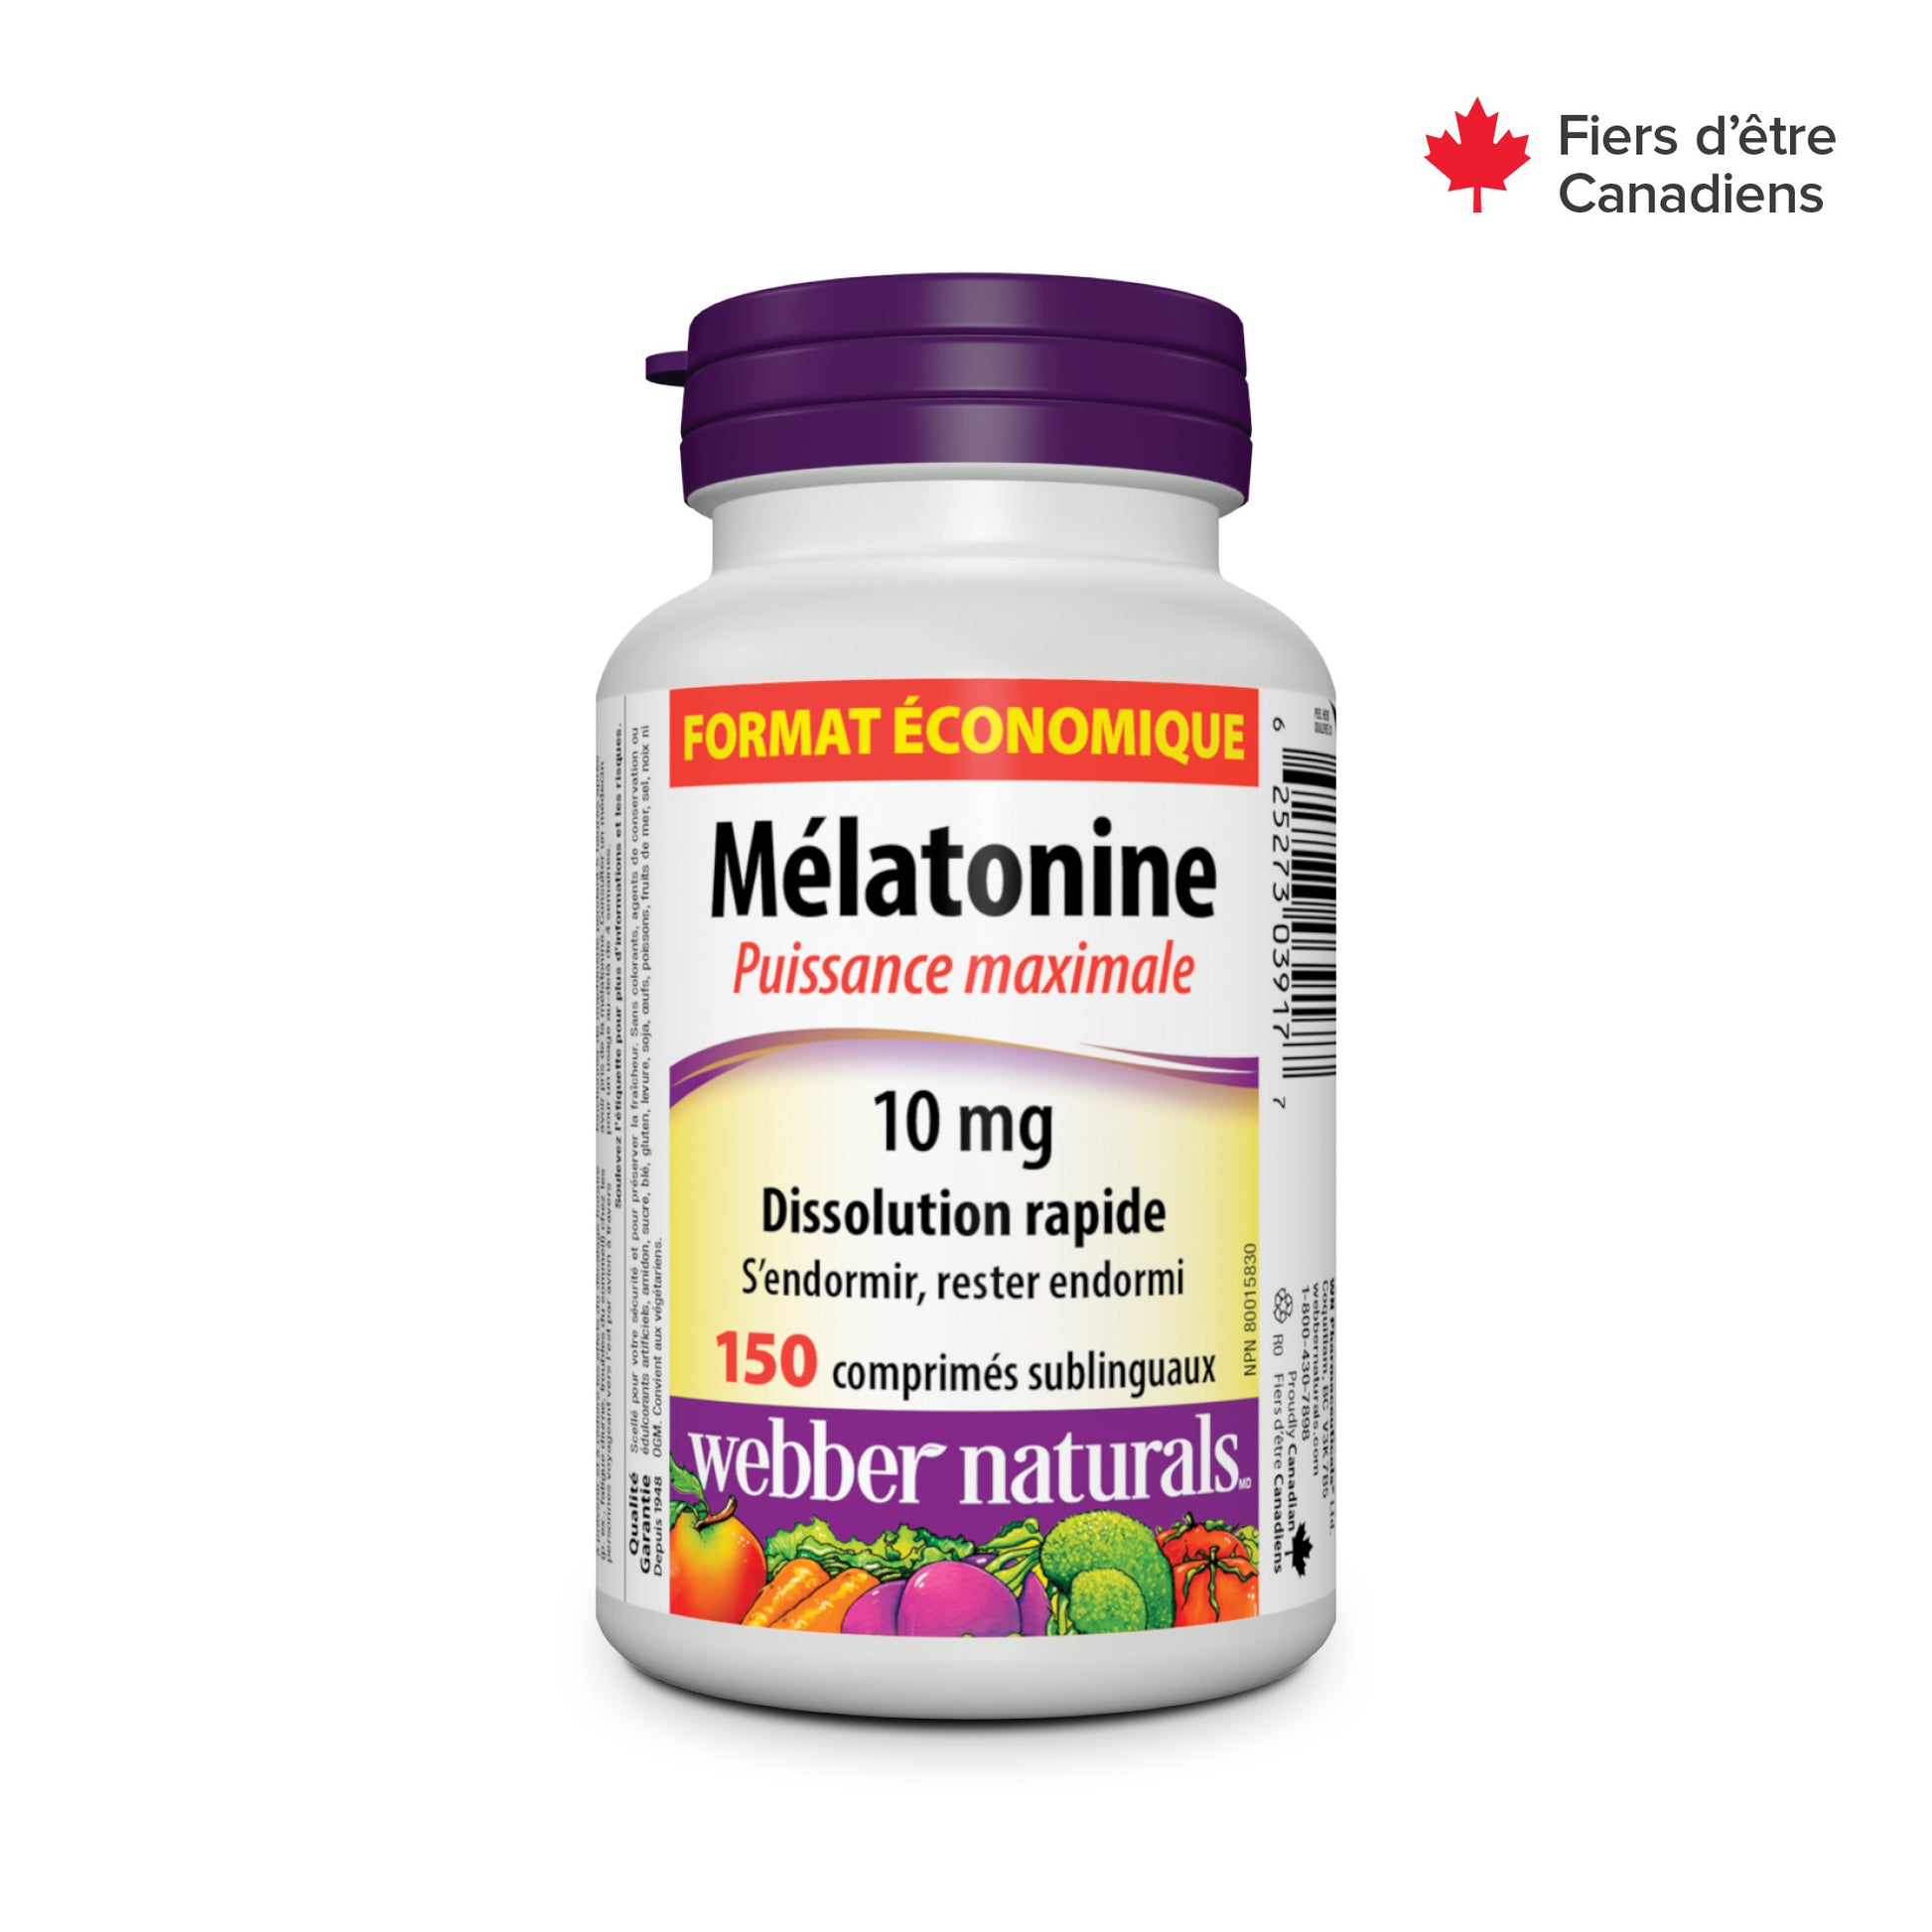 Melatonin Maximum Strength Quick Dissolve 10 mg for Webber Naturals|v|hi-res|WN3917